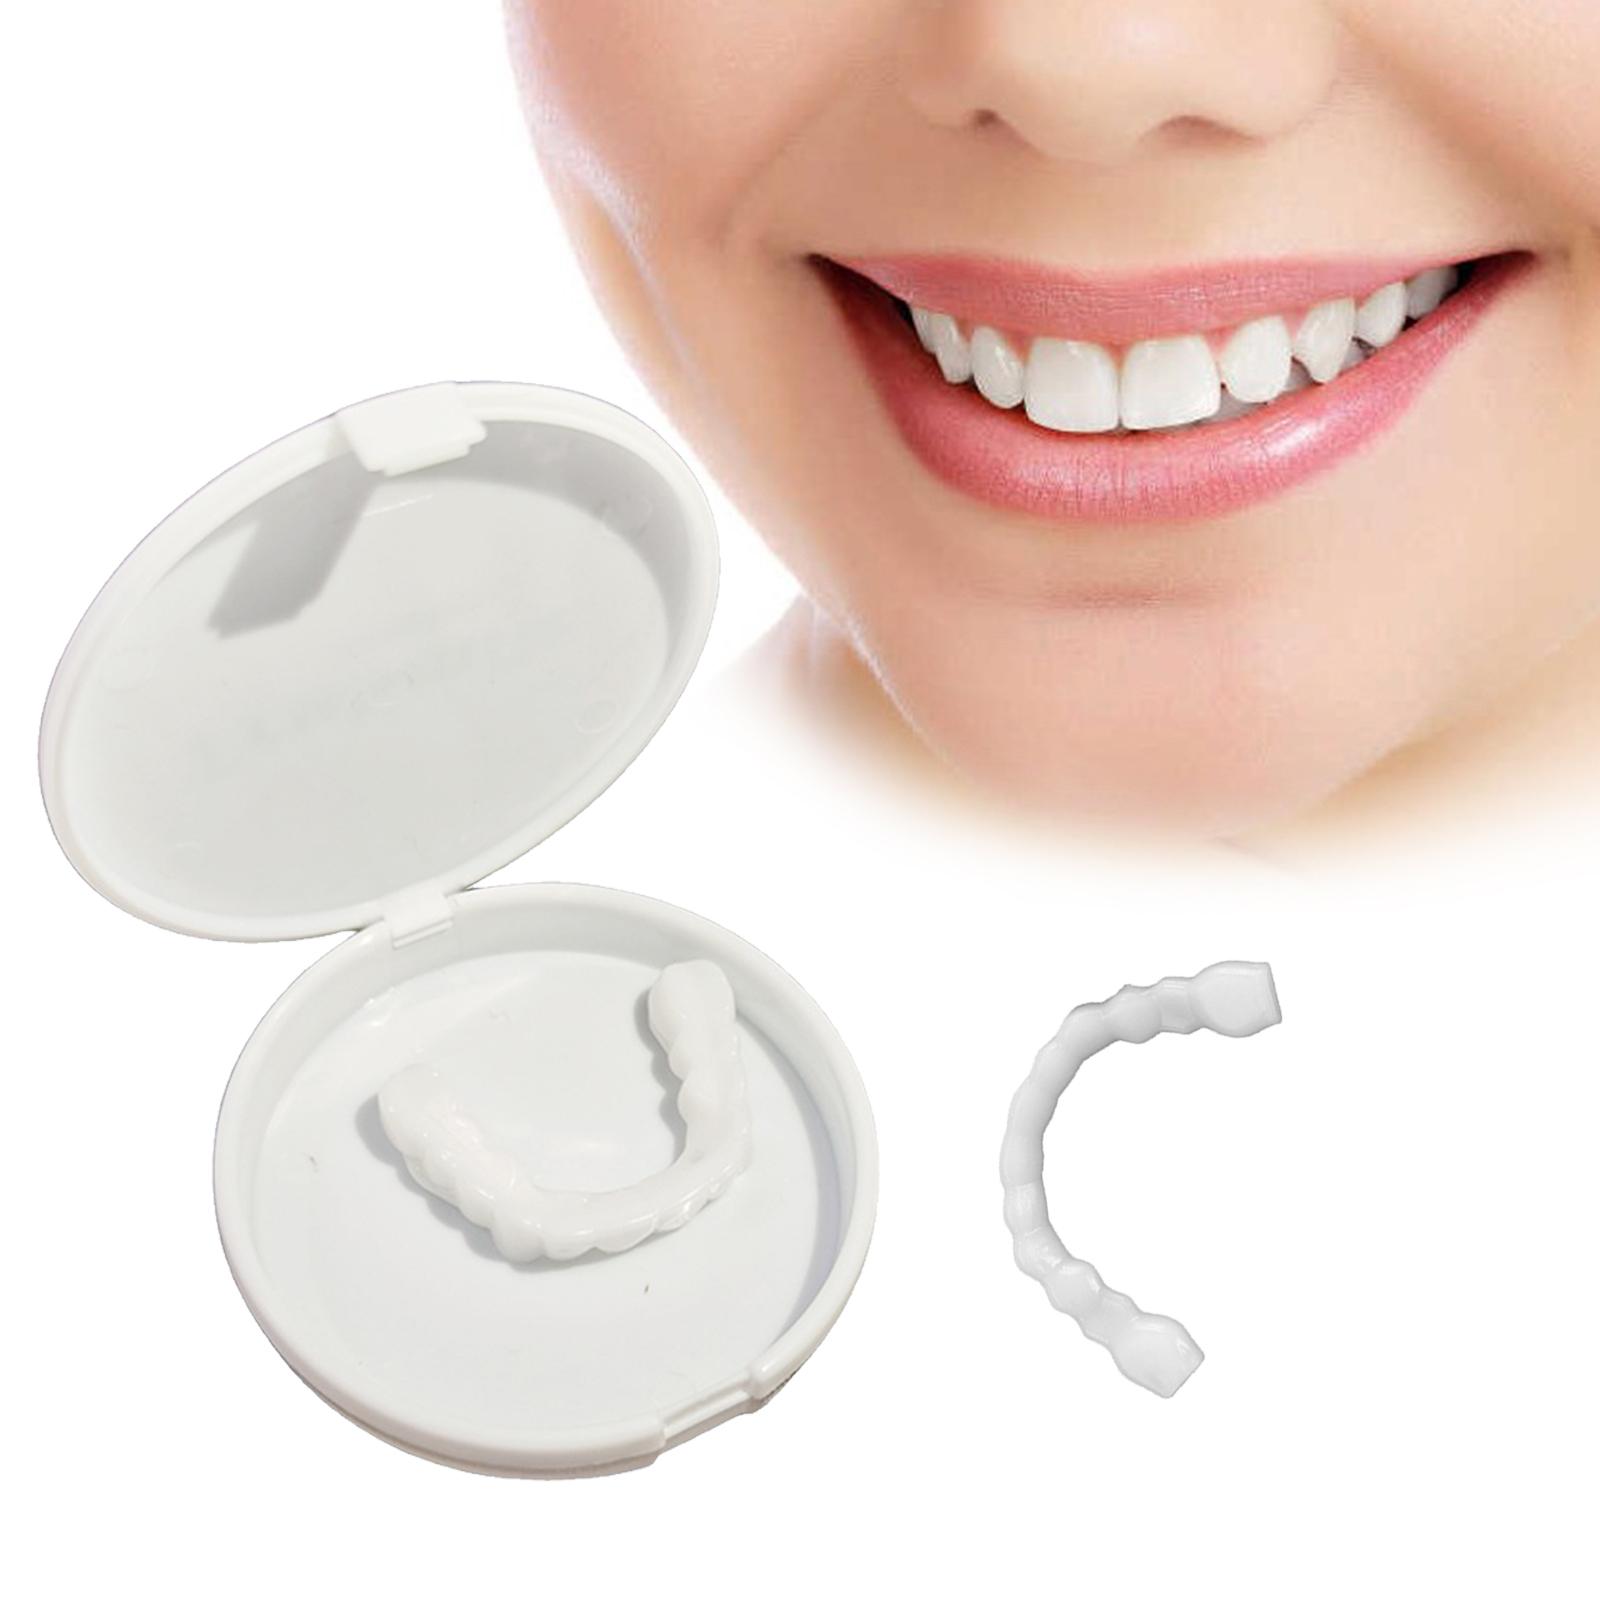 Resin Teeth Fake Teeth Simulation Braces Smiling Veneers Dentures ...